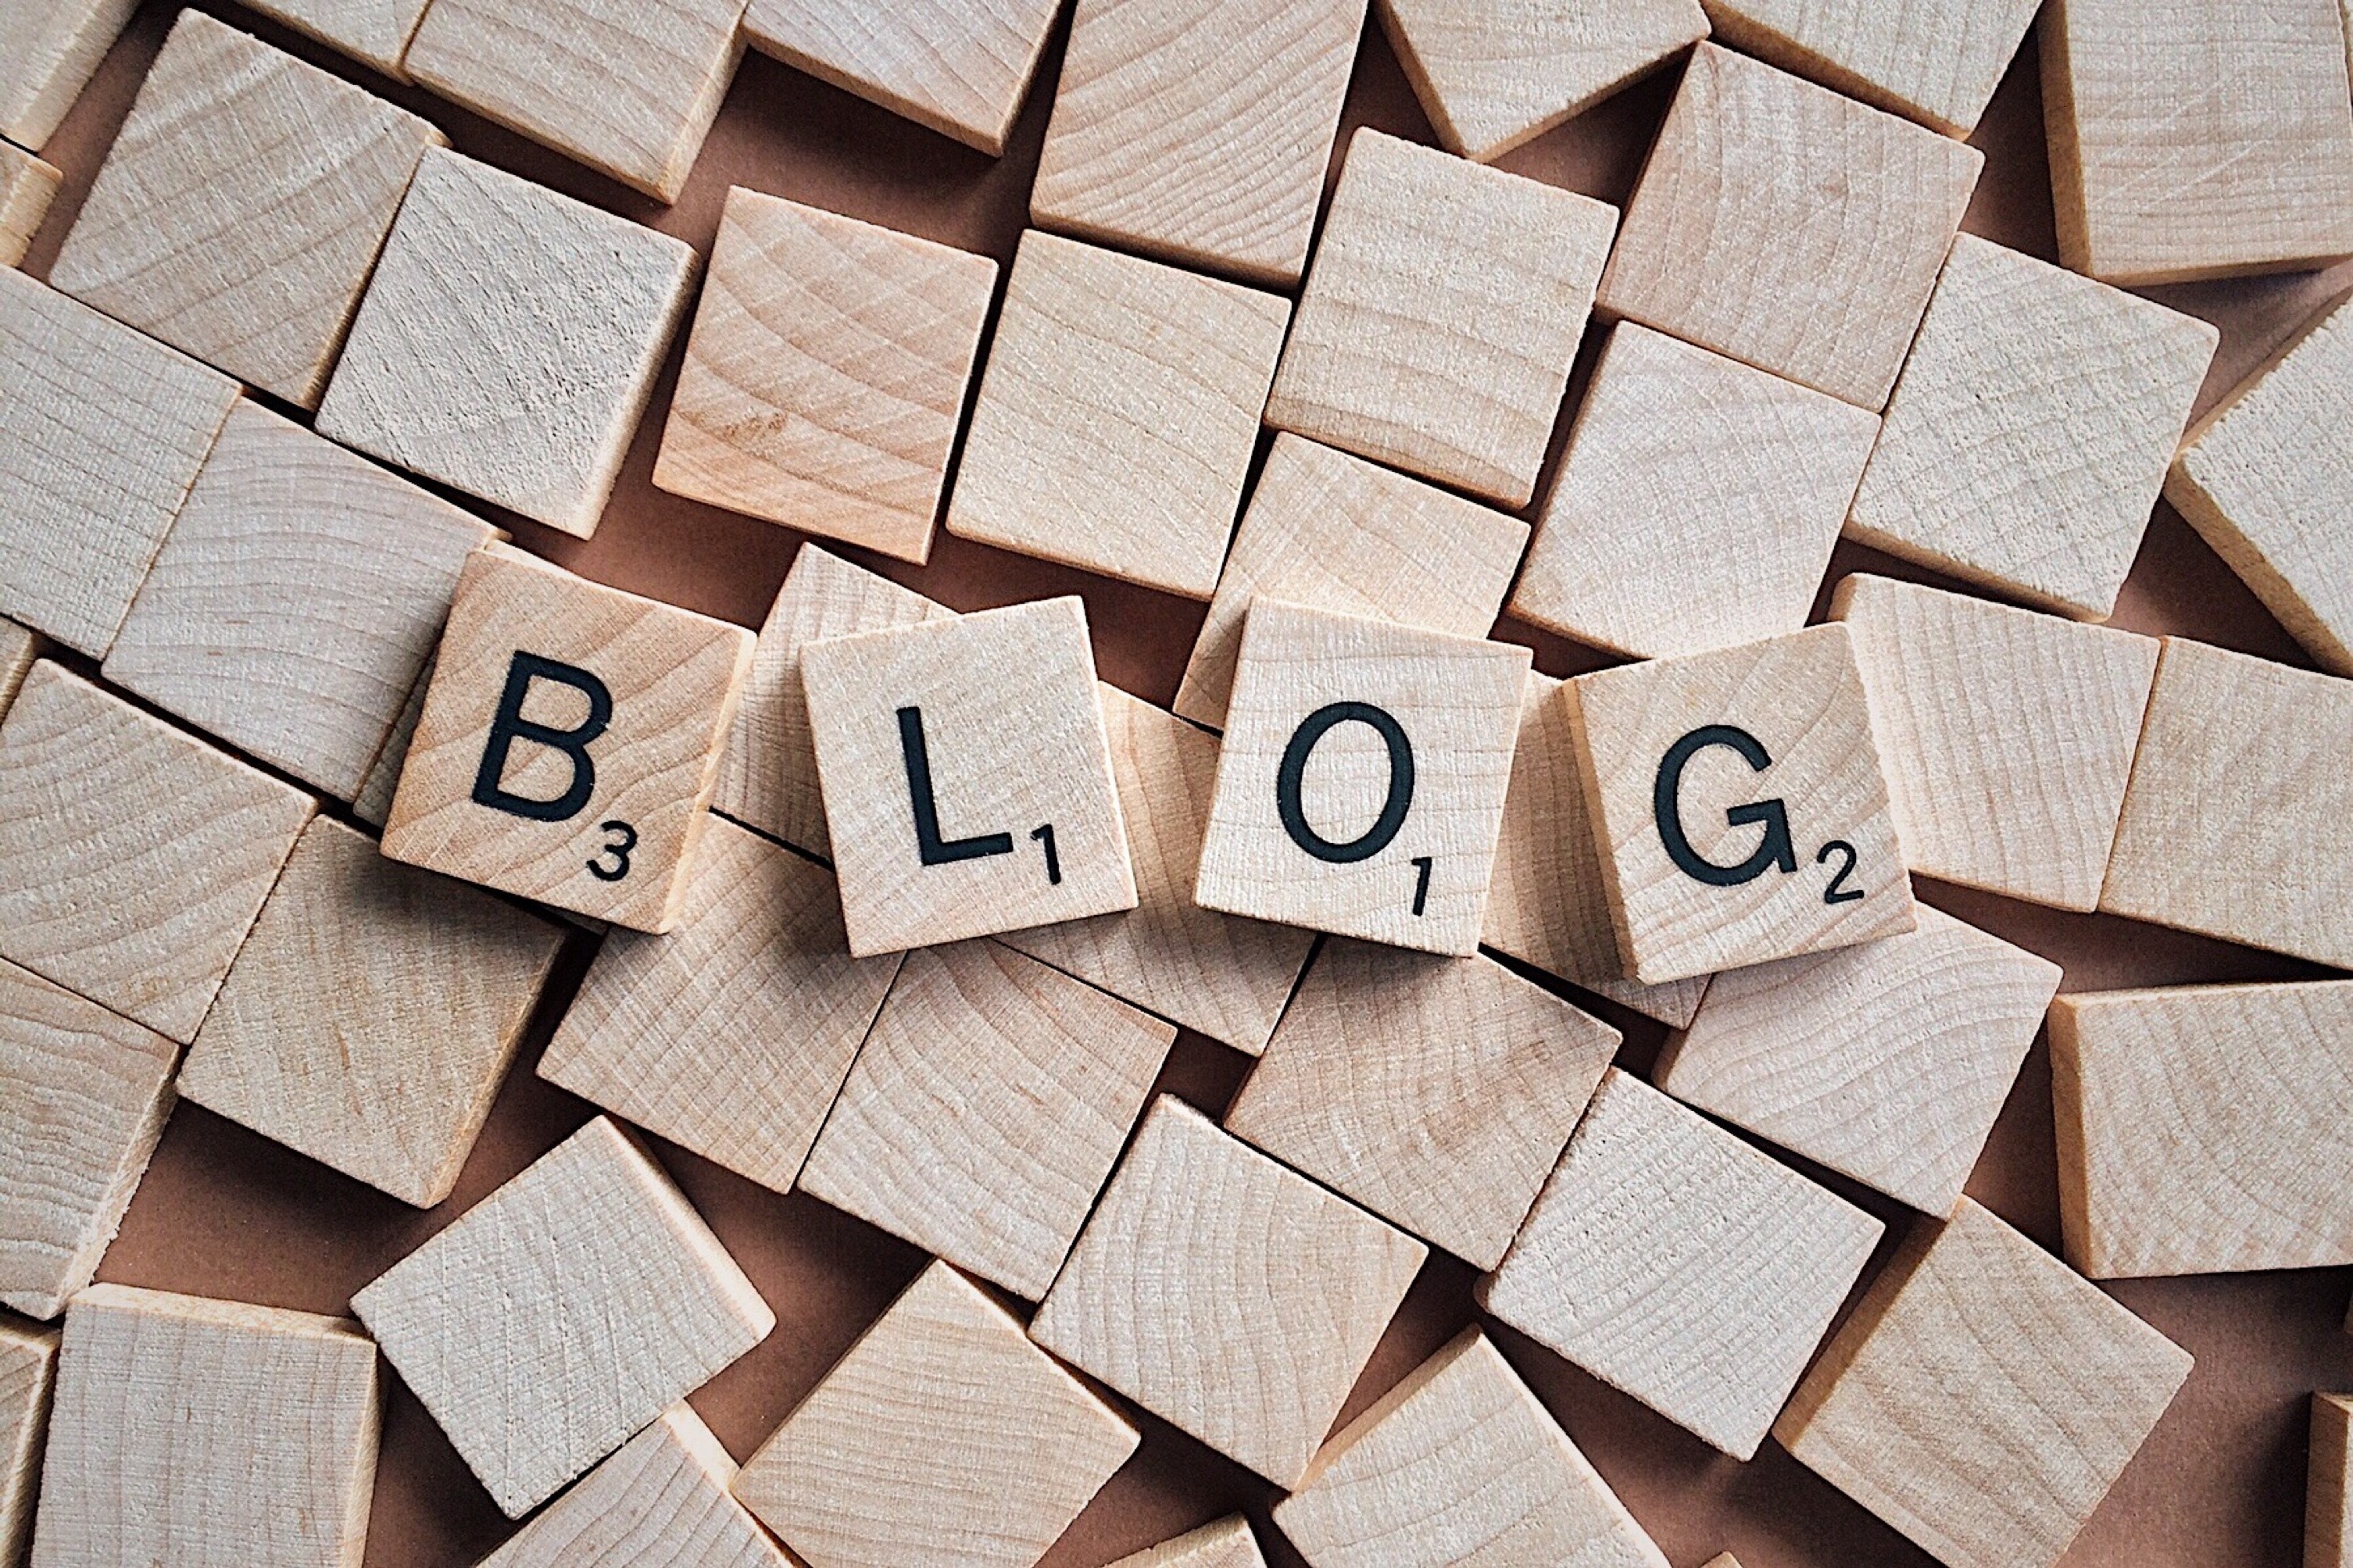 Blogs, innovadoras formas de comunicar políticas públicas